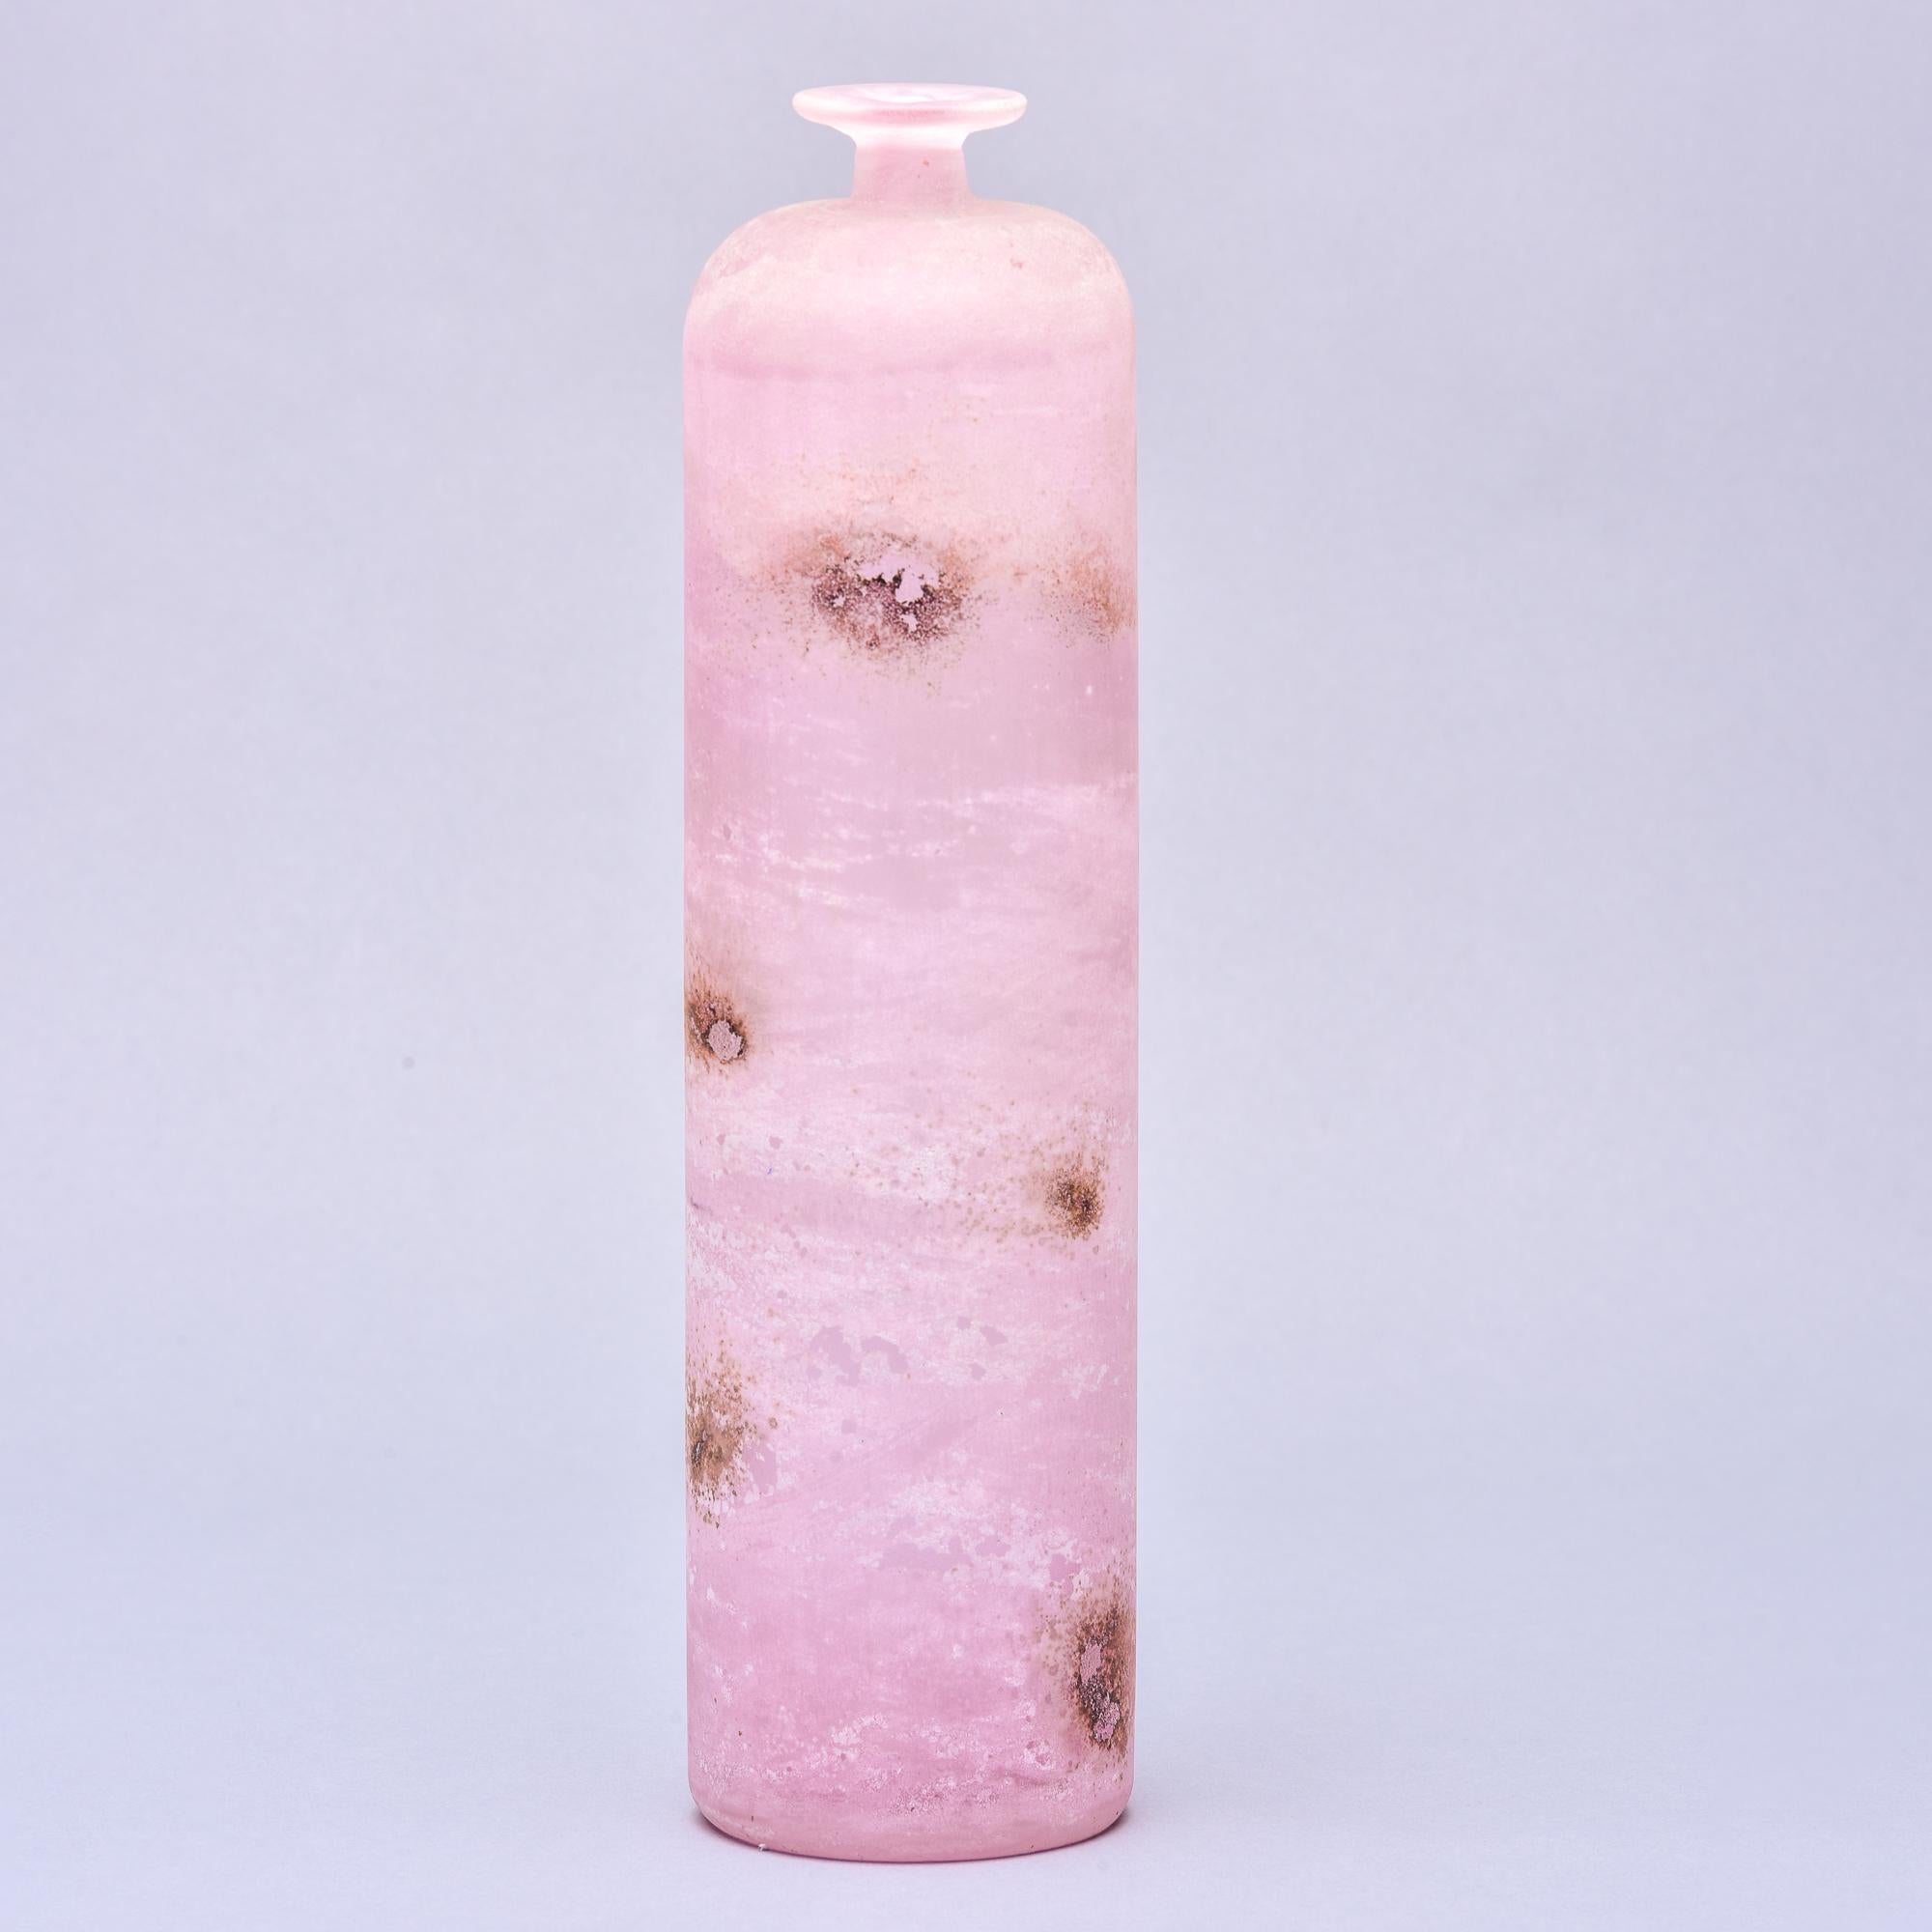 CIRCA 1960 signierte Cenedese Vase in Flaschenform mit schmalem Hals und Rand aus rosafarbenem Murano-Glas im Scavo-Stil. Geätzte Signatur auf der Unterseite des Sockels. 

Sehr guter Vintage-Zustand, keine Mängel festgestellt.